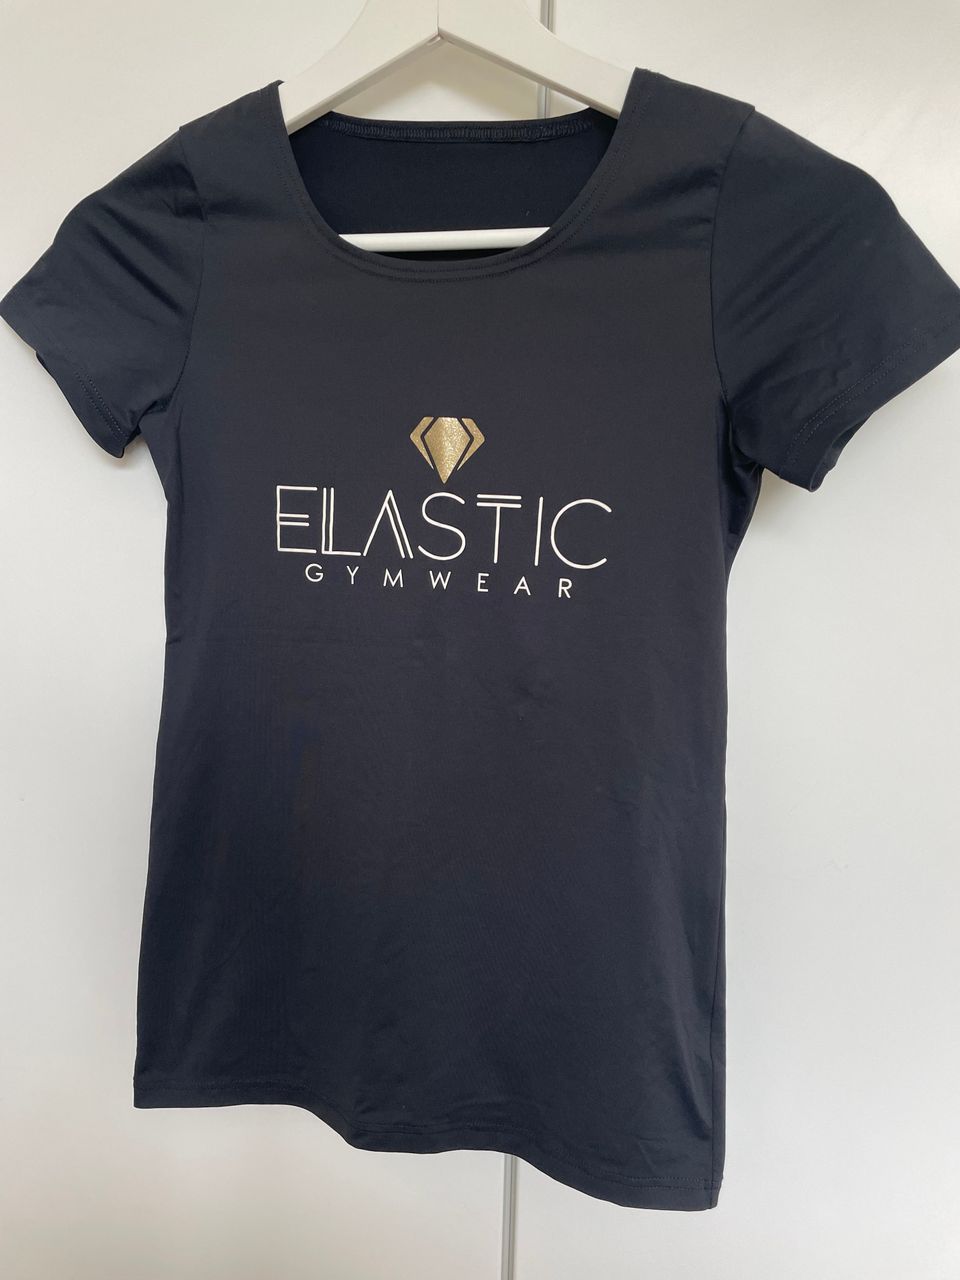 Hyväkuntoinen Elastic gymwear t-paita 160 cm